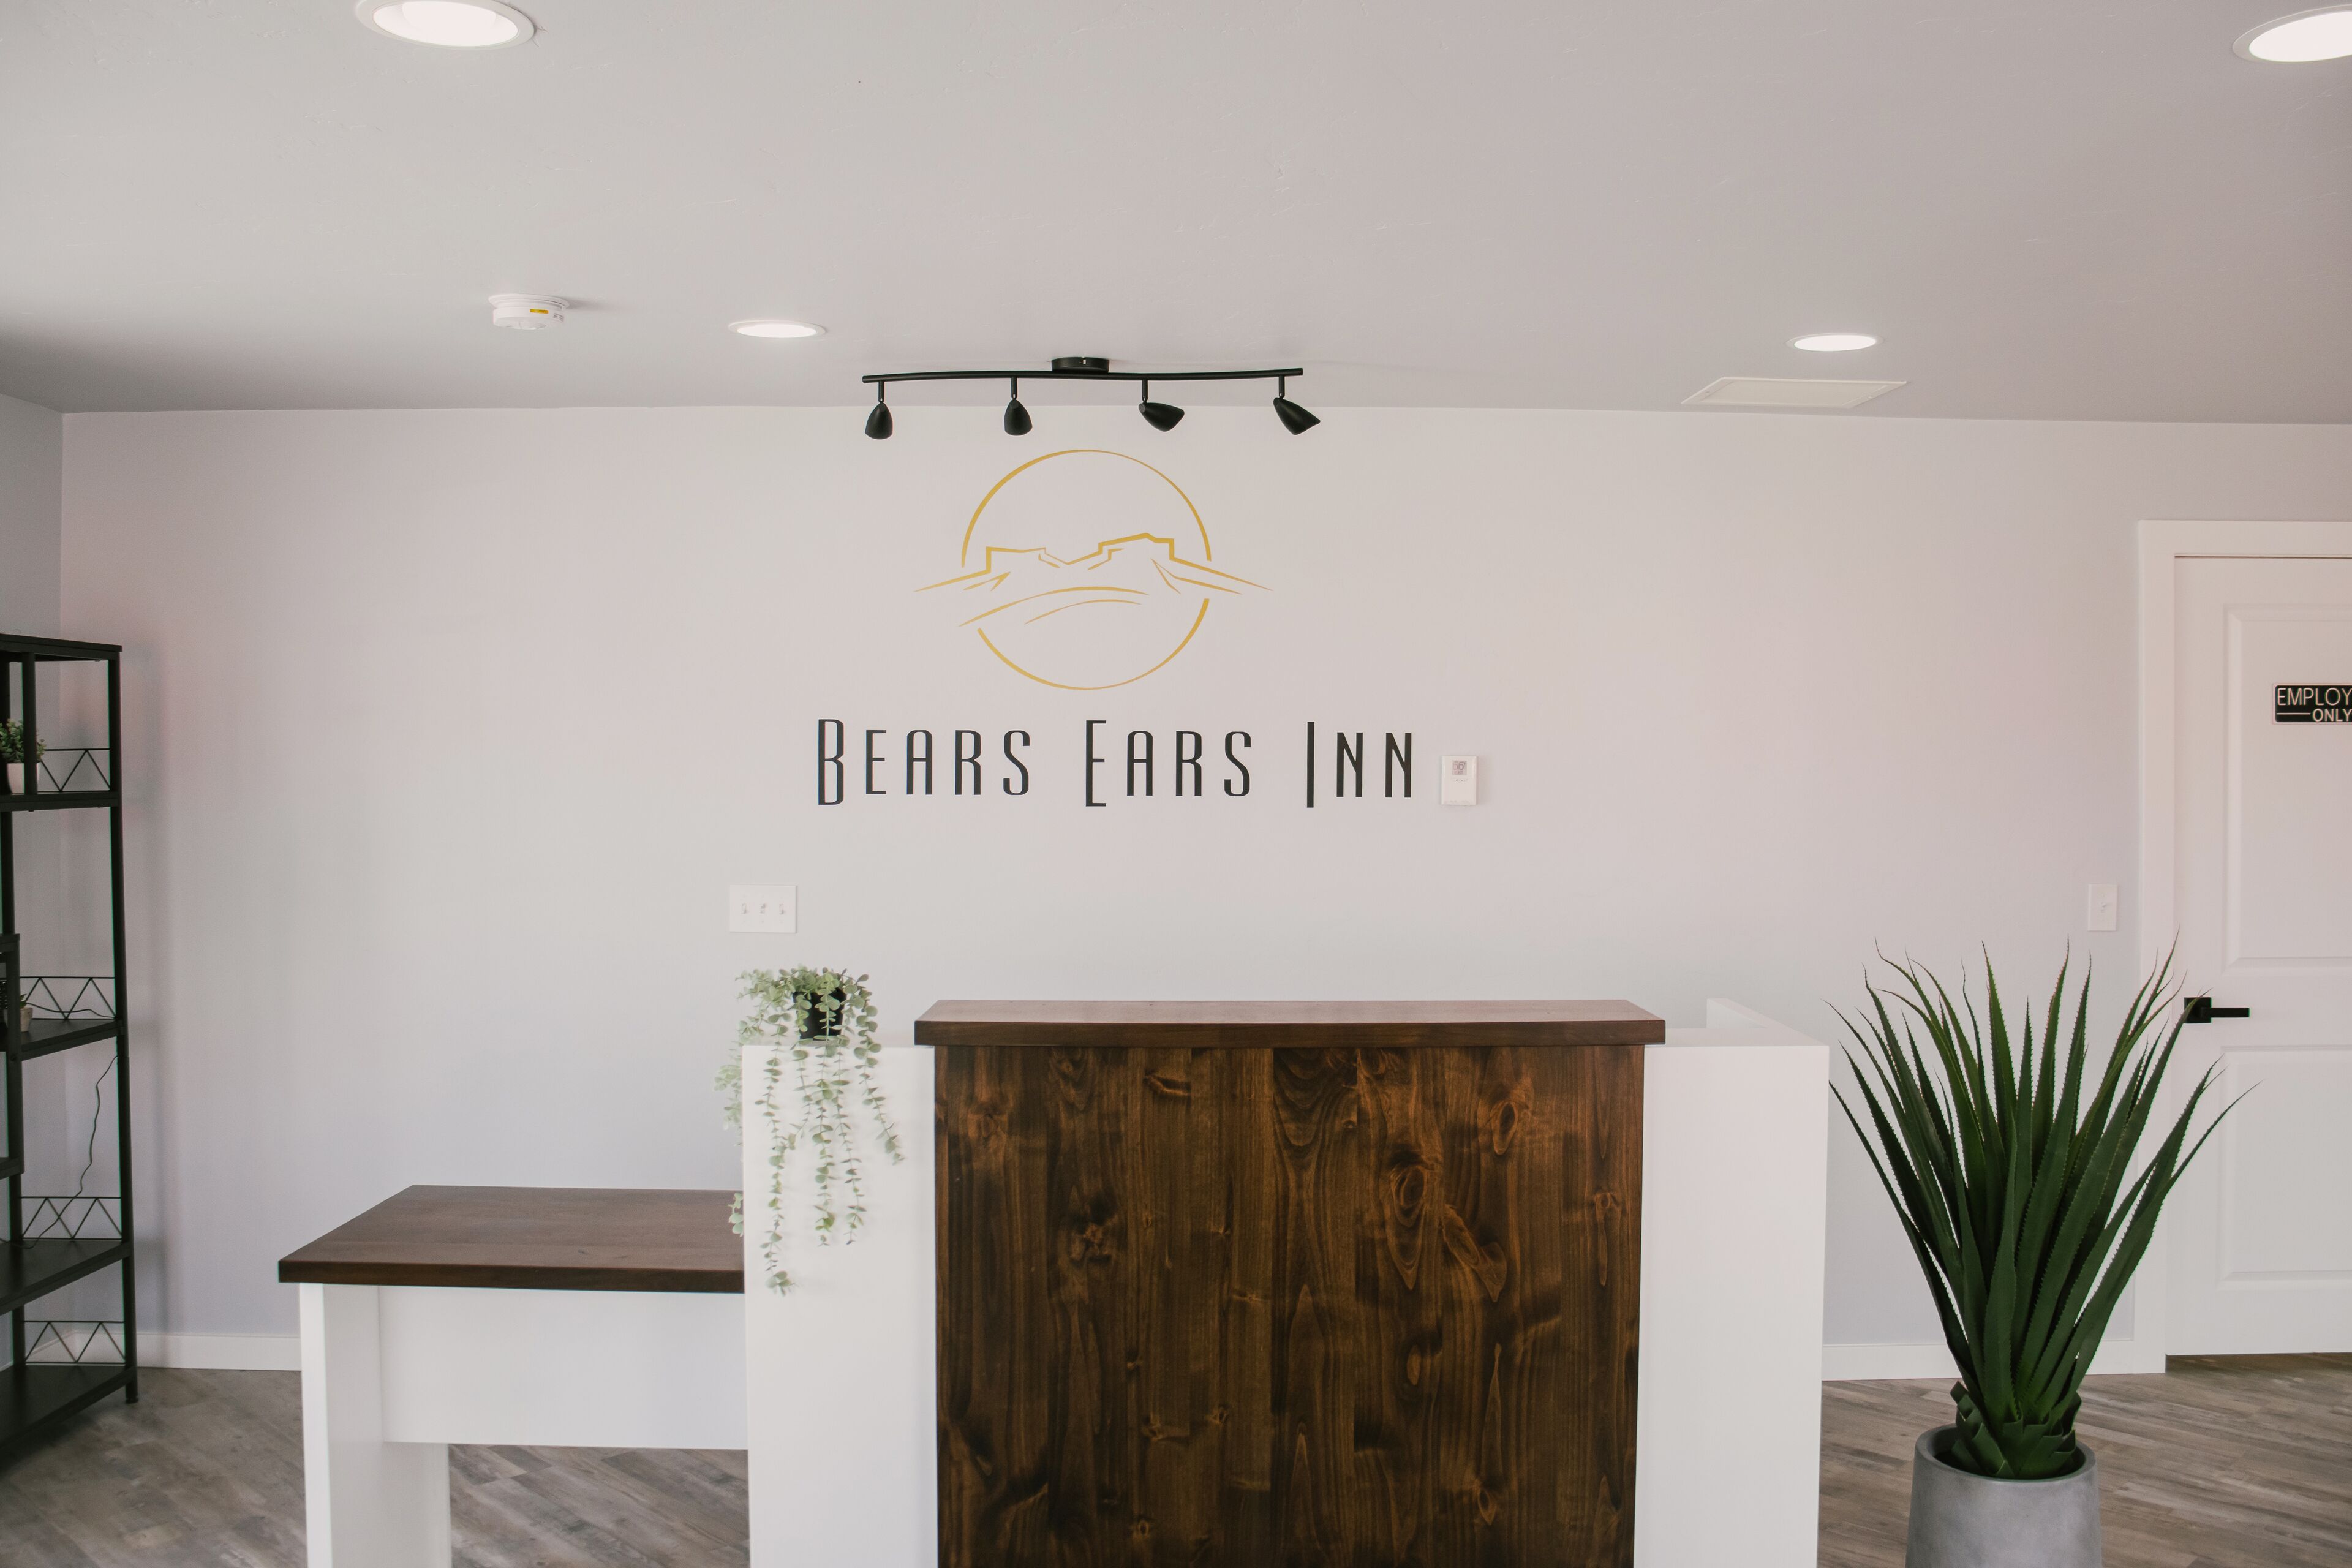 Bears Ears Inn